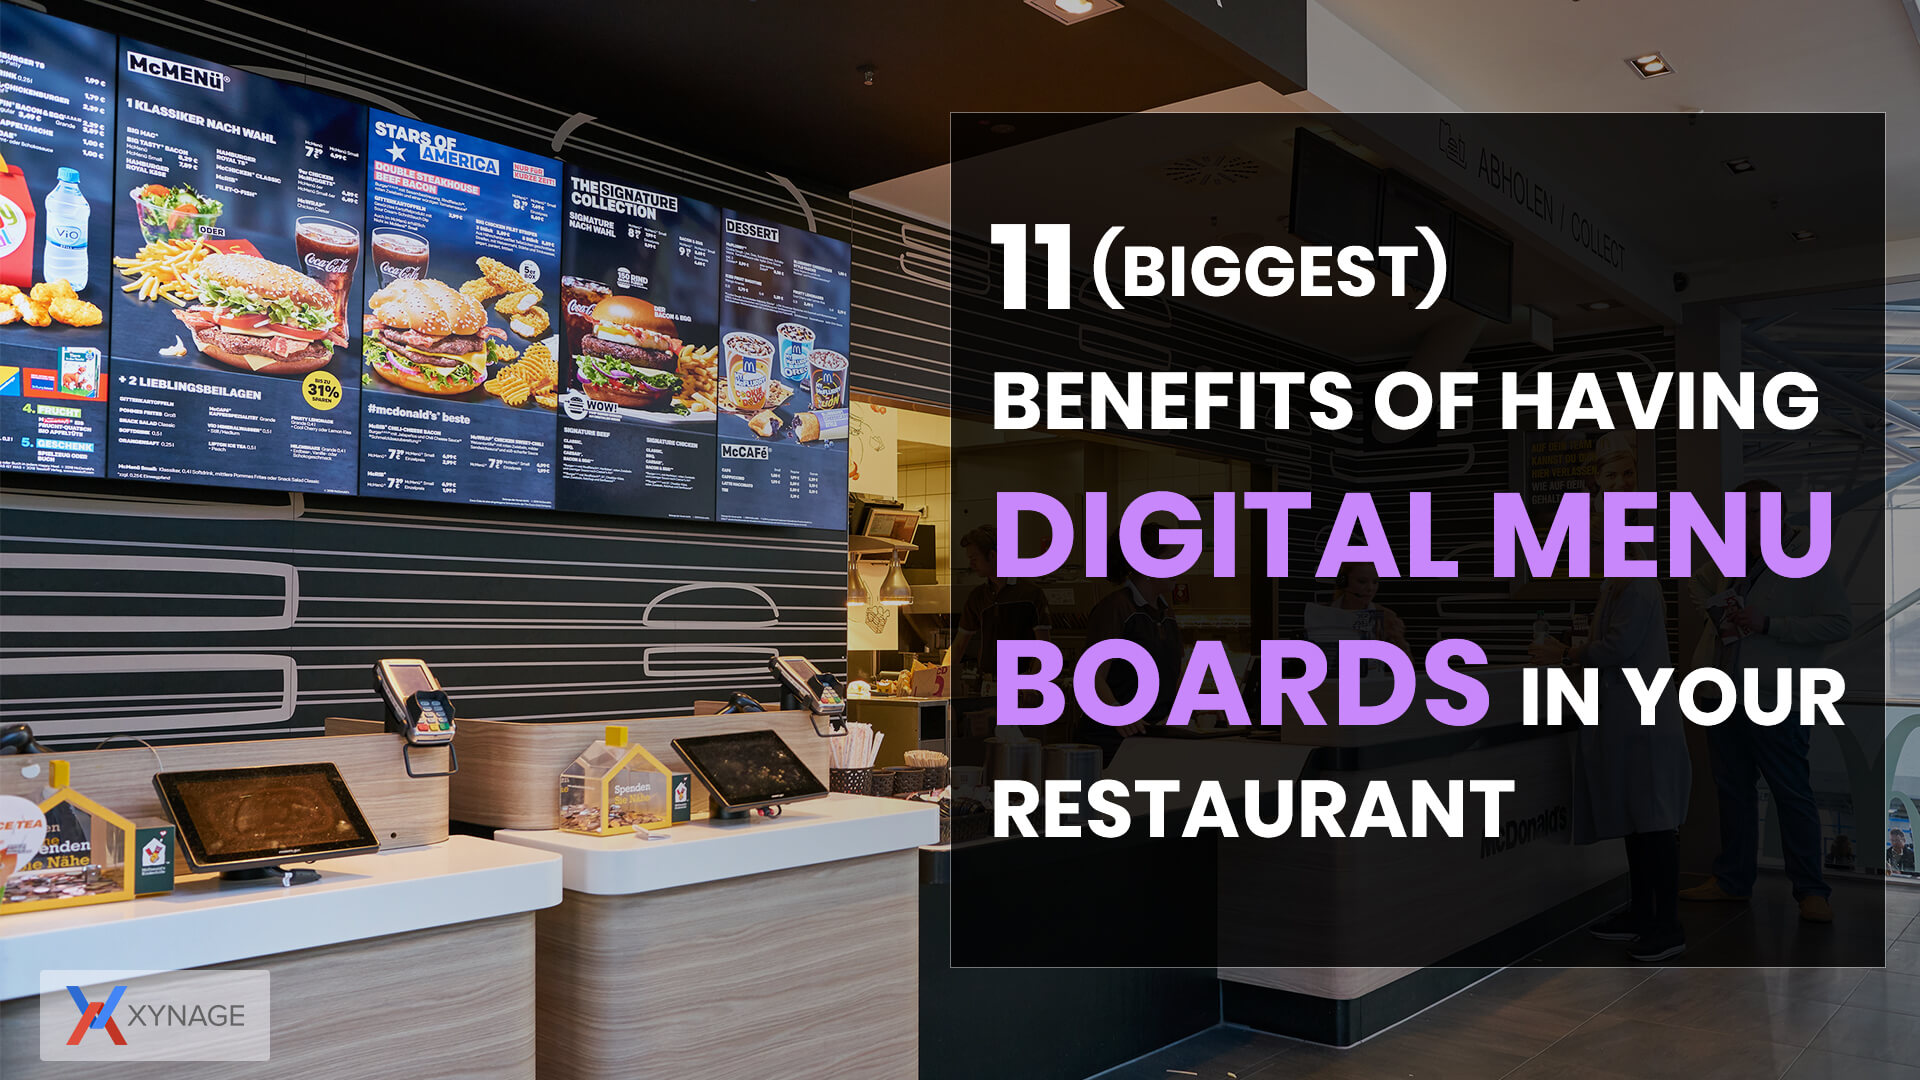 11 (Biggest) Benefits of having Digital Signage for Restaurant